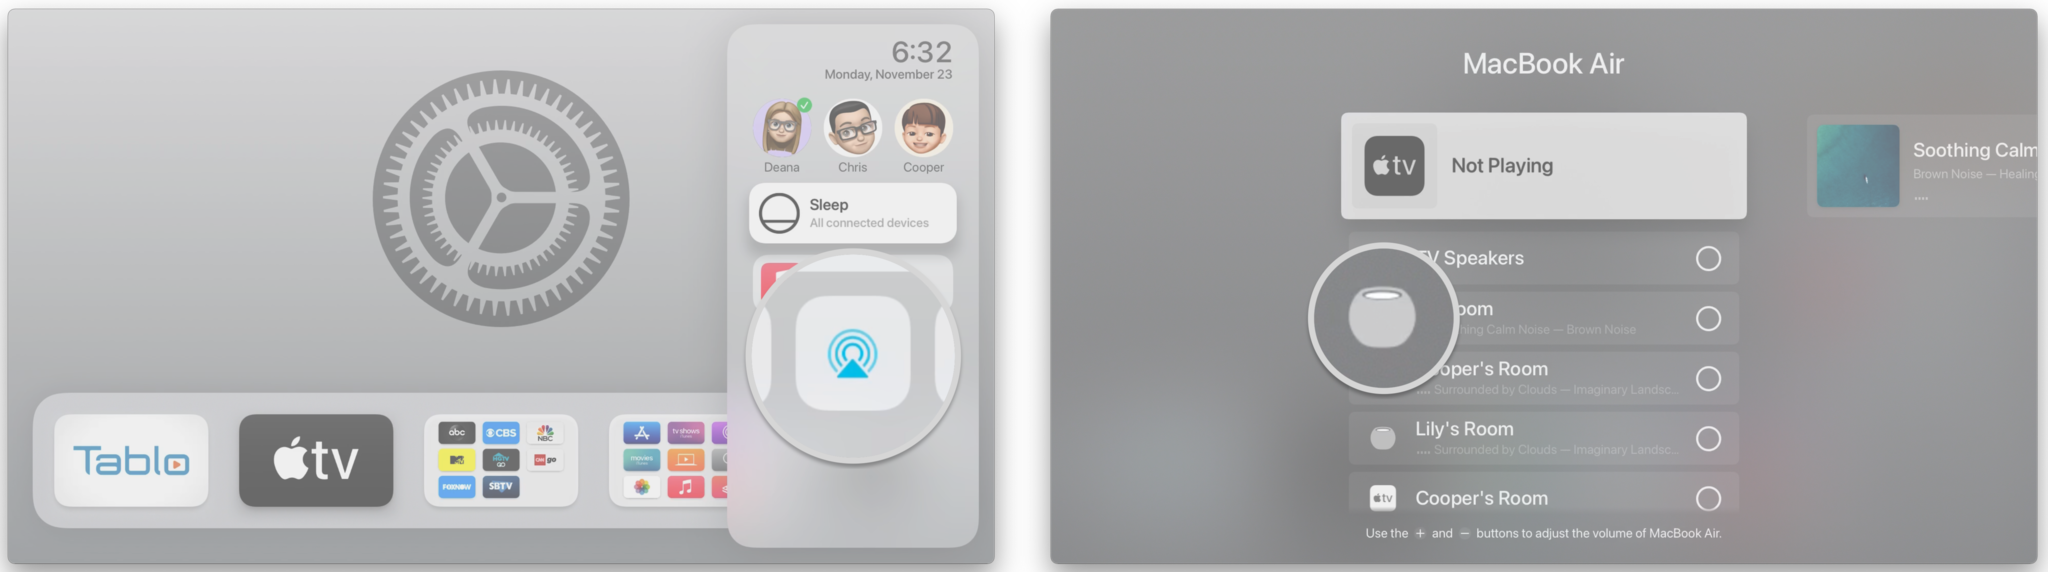 Comment configurer HomePod ou HomePod mini avec Apple TV via AirPlay : maintenez enfoncé le bouton Accueil de la télécommande Siri pendant 3 secondes, cliquez sur l'icône AirPlay, sélectionnez votre HomePod d'un clic